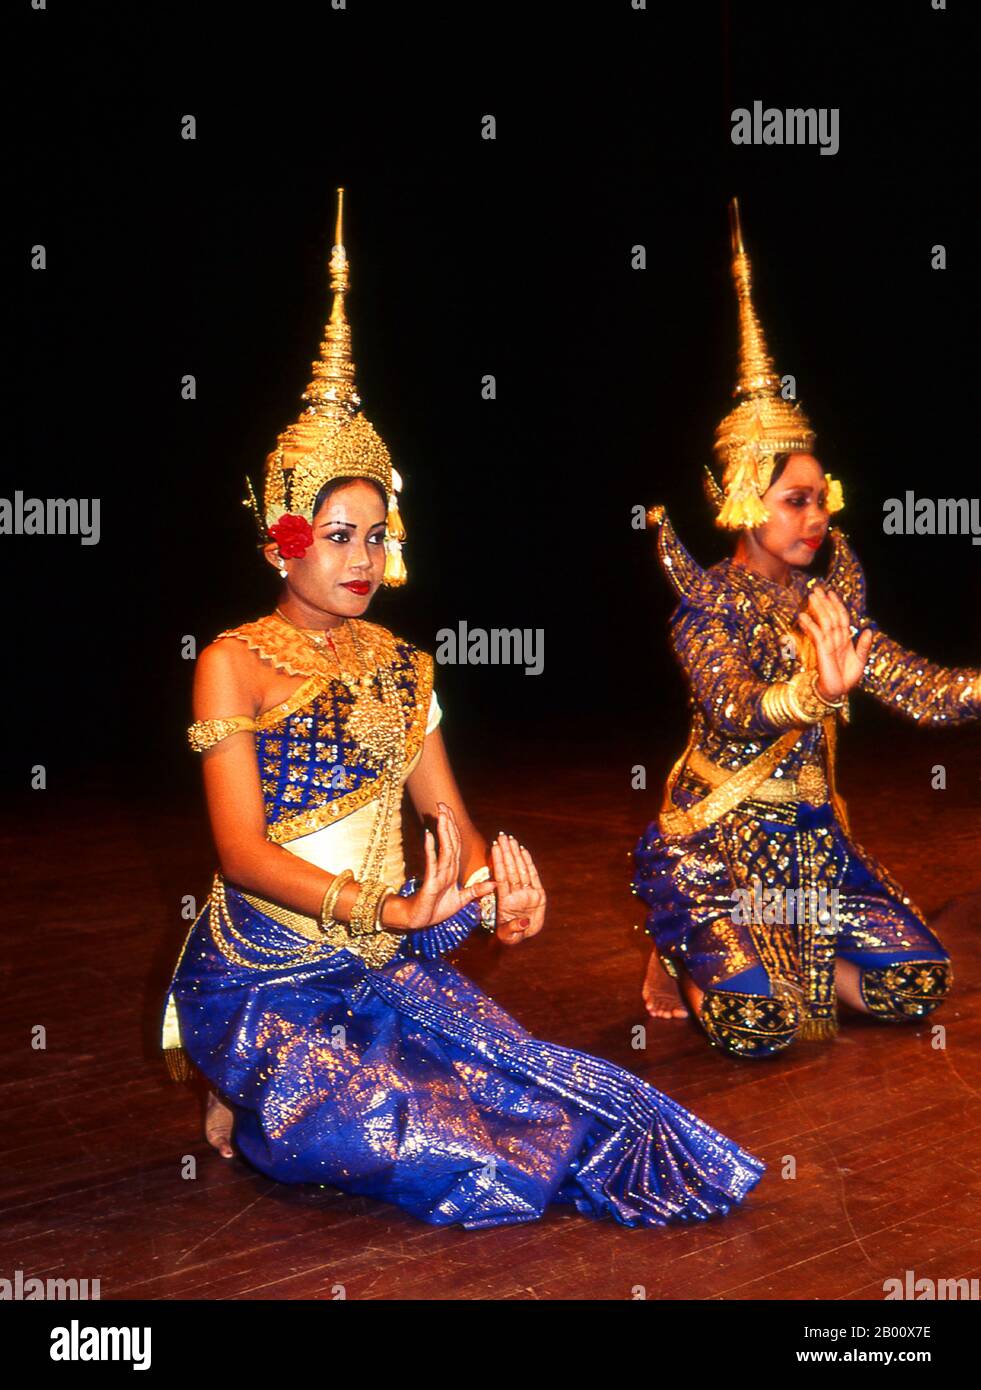 Kambodscha: Tänzer, Royal Ballet of Cambodia, Phnom Penh Khmer der klassische Tanz ähnelt den klassischen Tänzen Thailands und Kambodschas. Der Reamker ist eine Khmer-Version des Ramayana und ist eines der am häufigsten durchgeführten Tanzdramen. Stockfoto